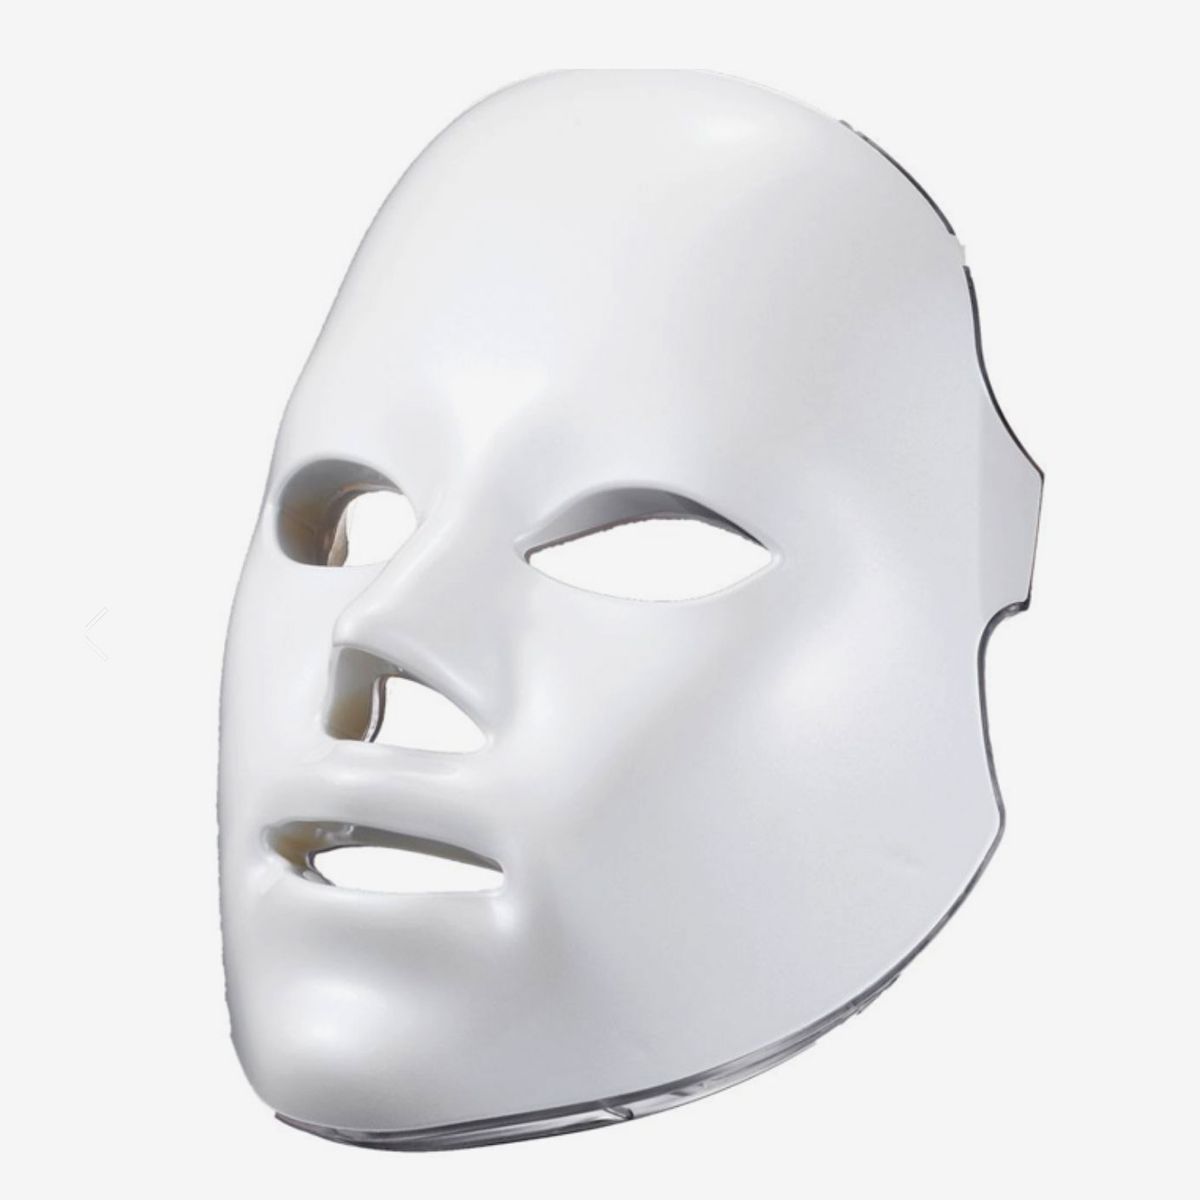 Shani Darden by Déesse Pro Light Therapy Mask